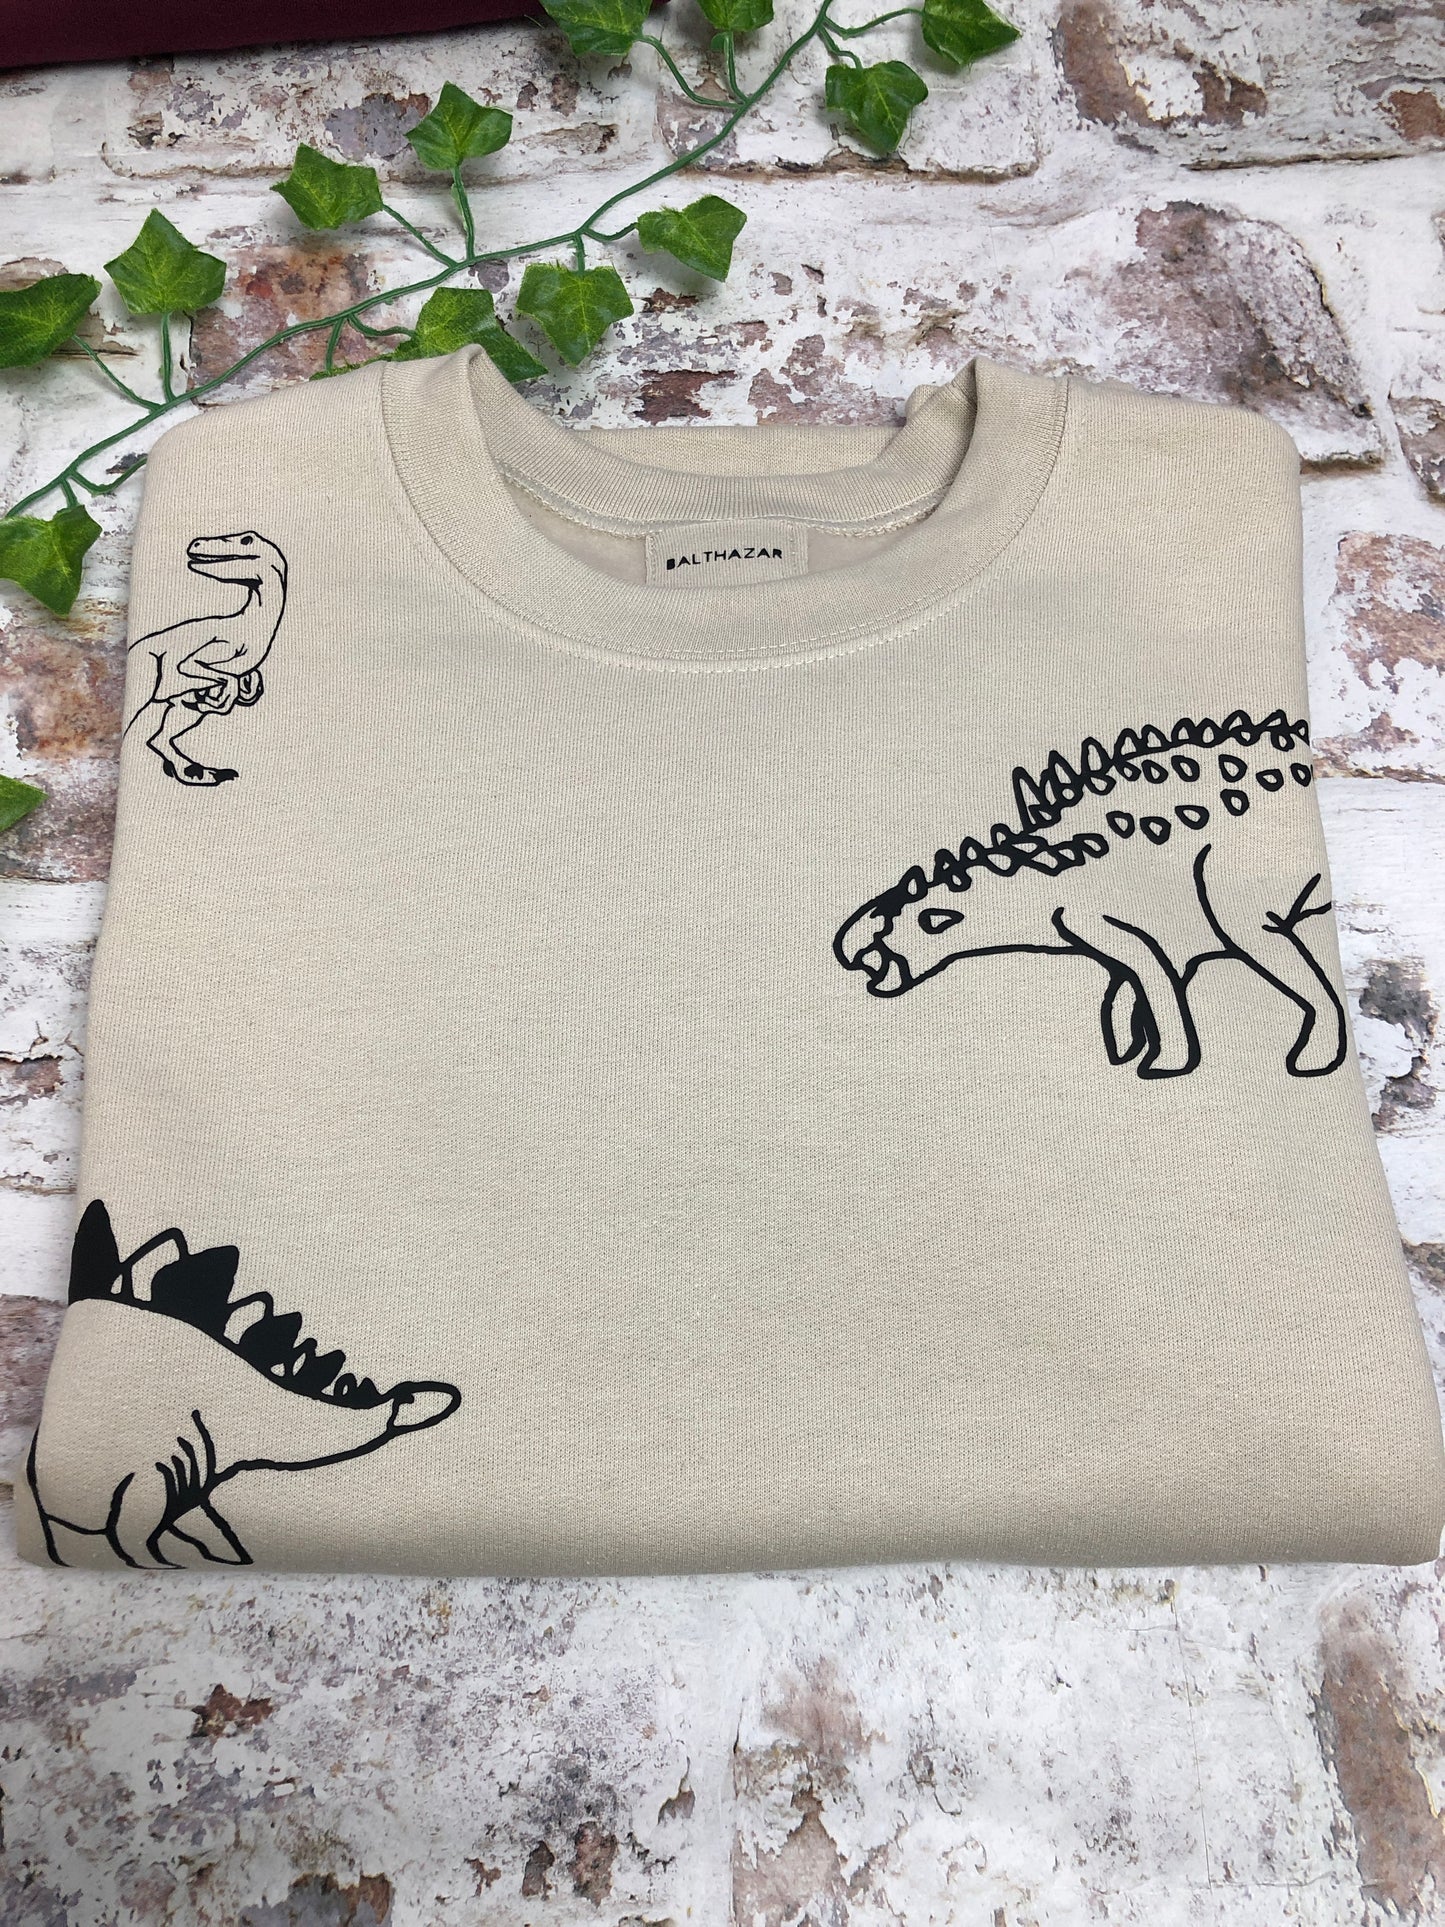 Mega Dinosaur sweatshirt